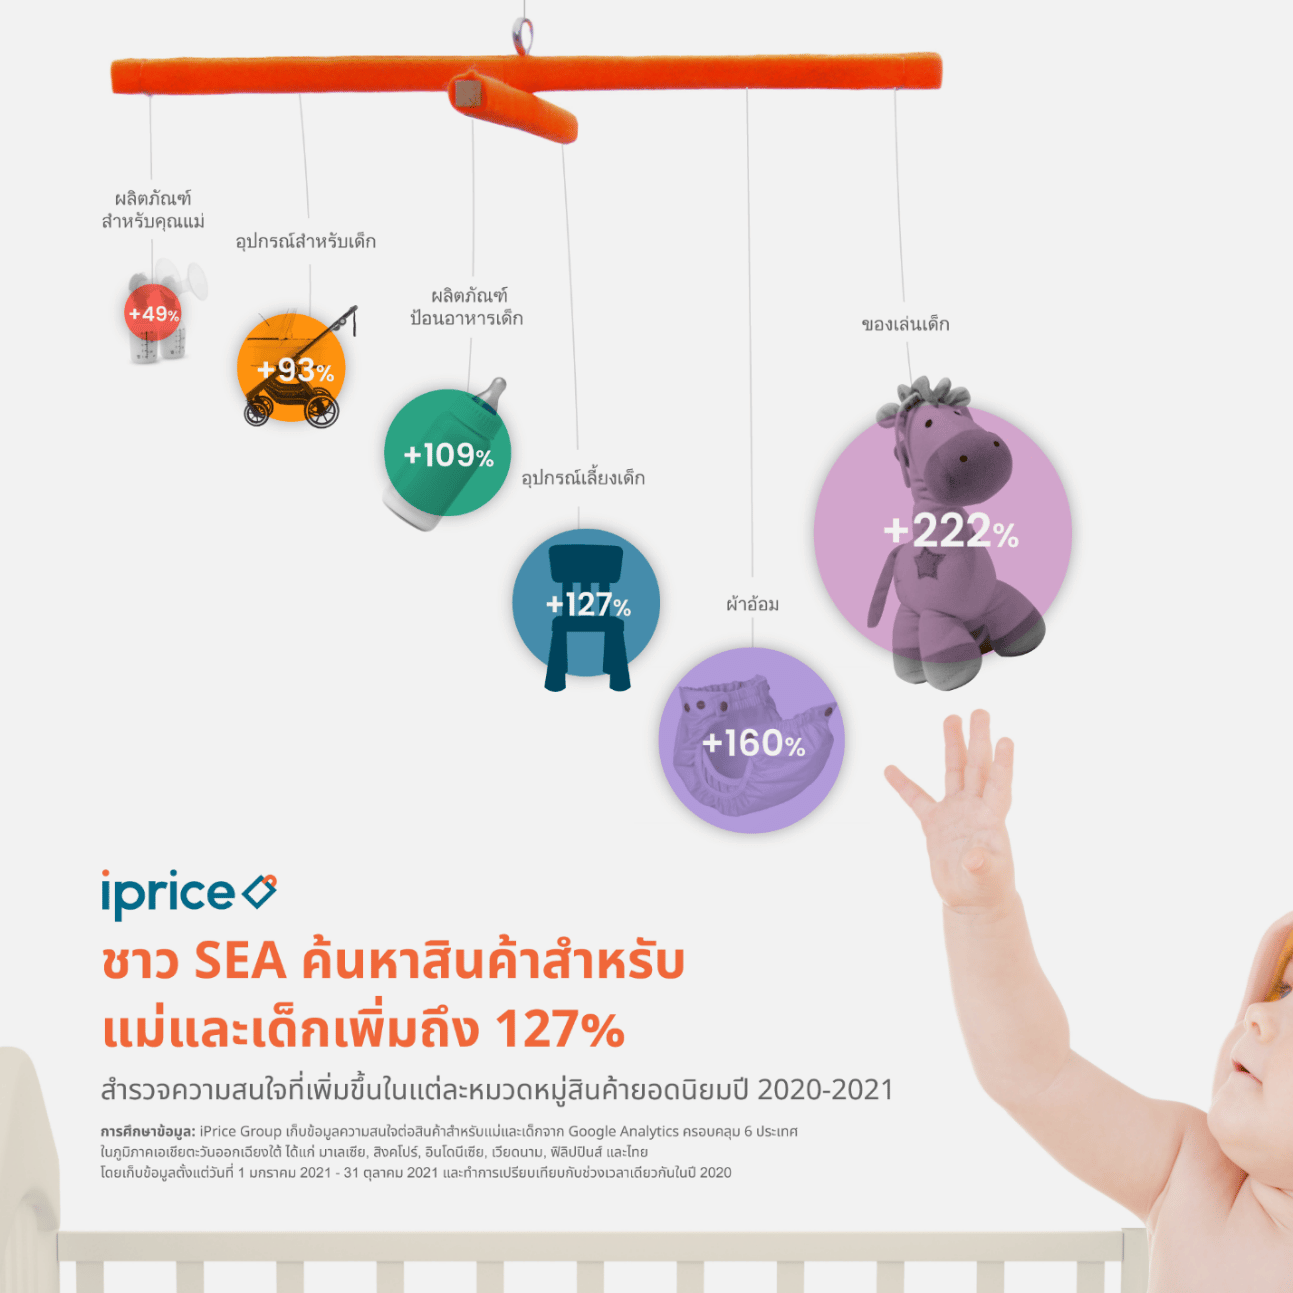 หากมีลูก ต้องมีเงินแค่ไหนถึงไหว ในยุคค่าแรงขั้นต่ำคนไทย